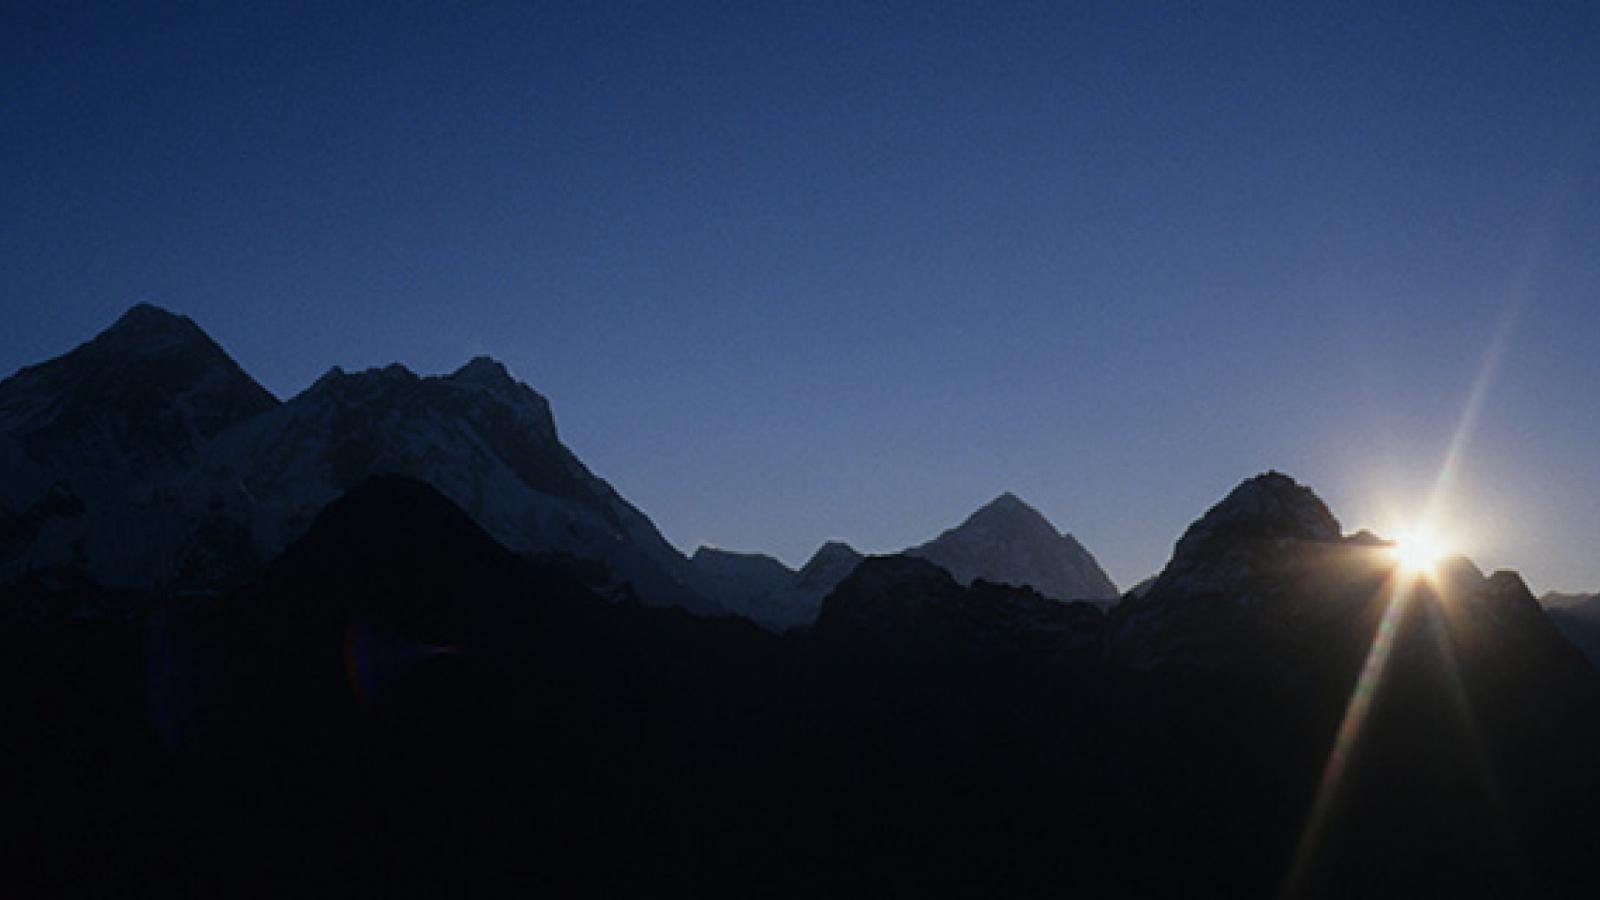 Sunrise over the Himalayas, Nepal.